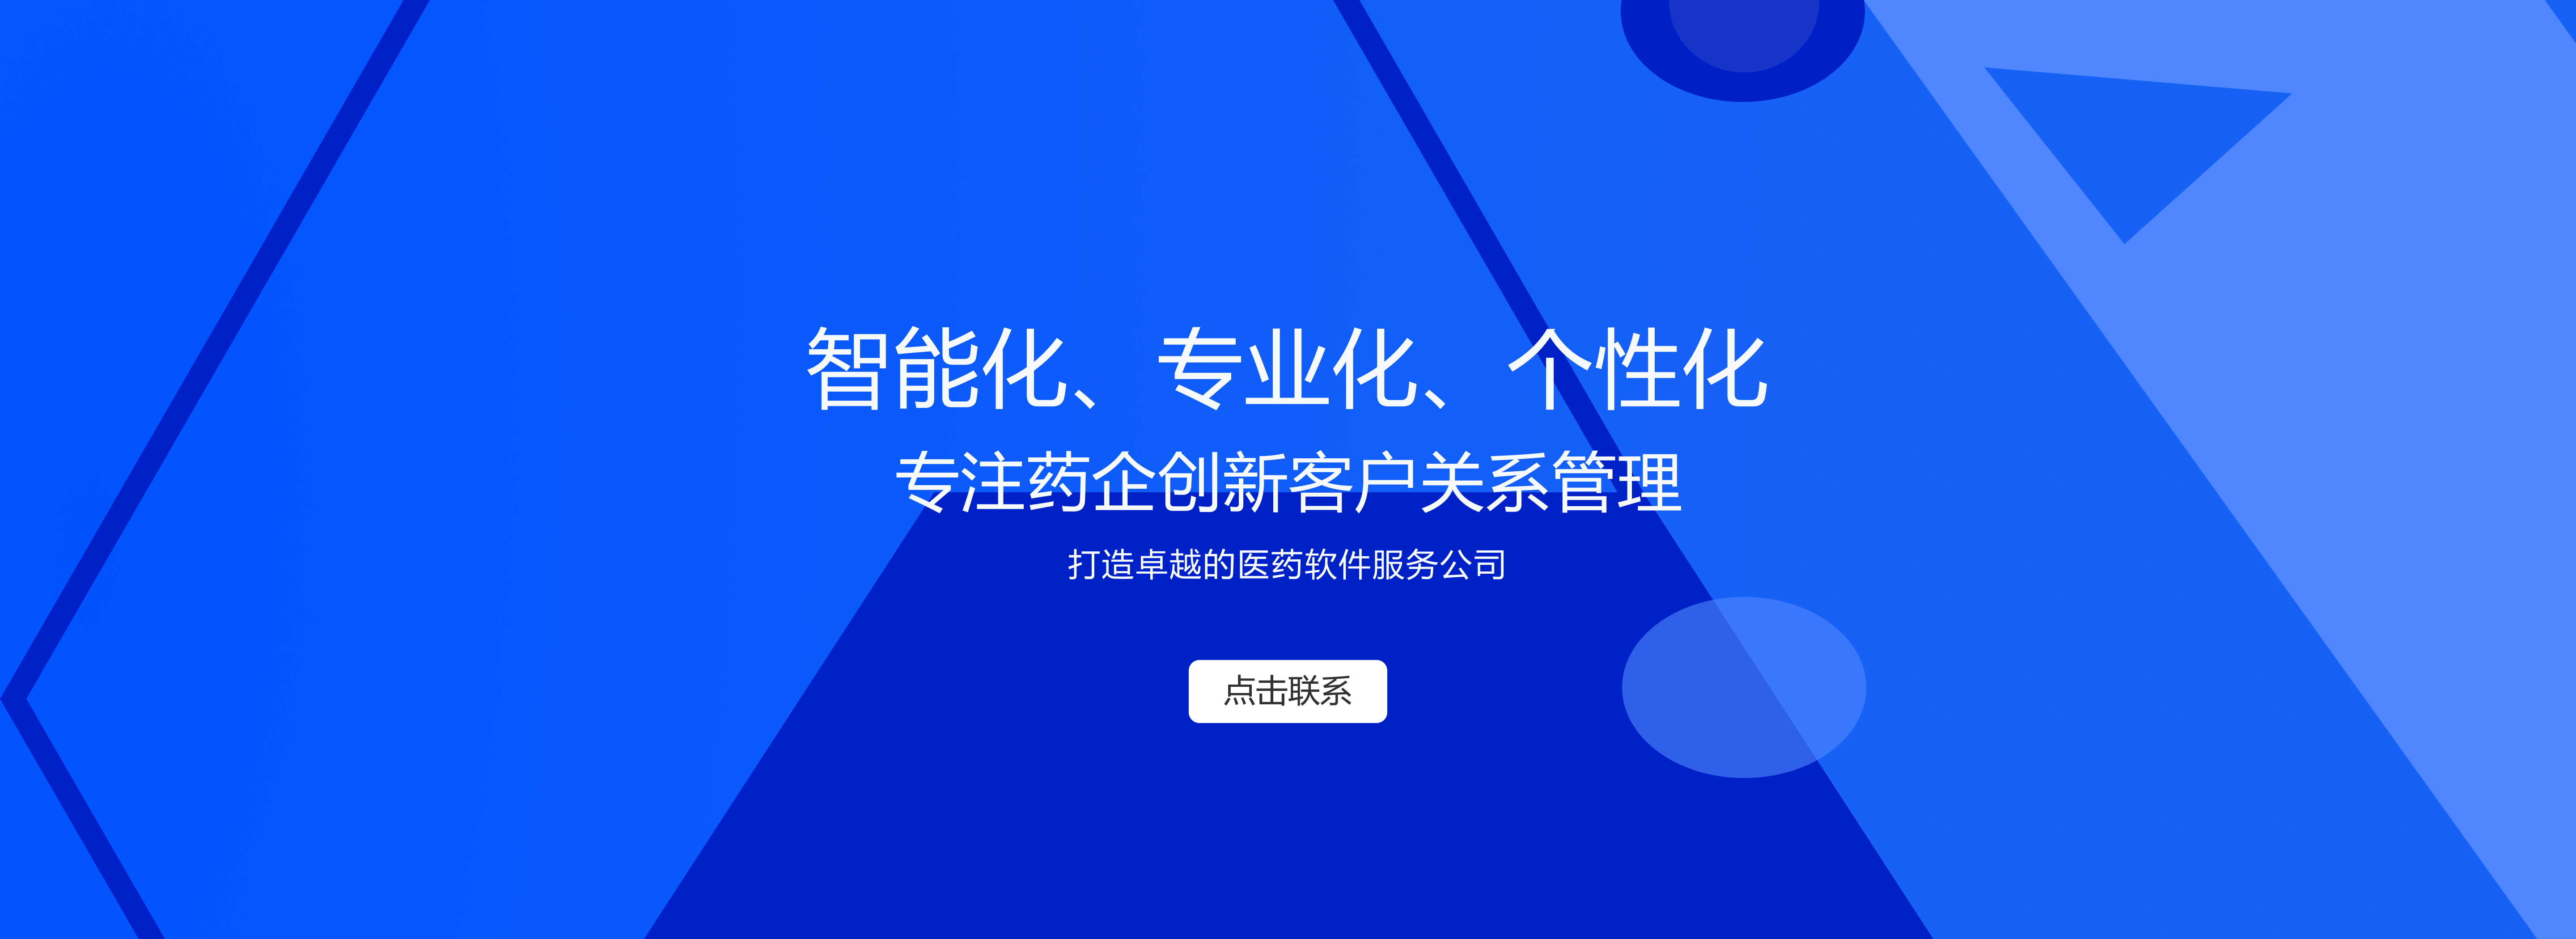 杭州唯可趣信息技术有限公司公司介绍